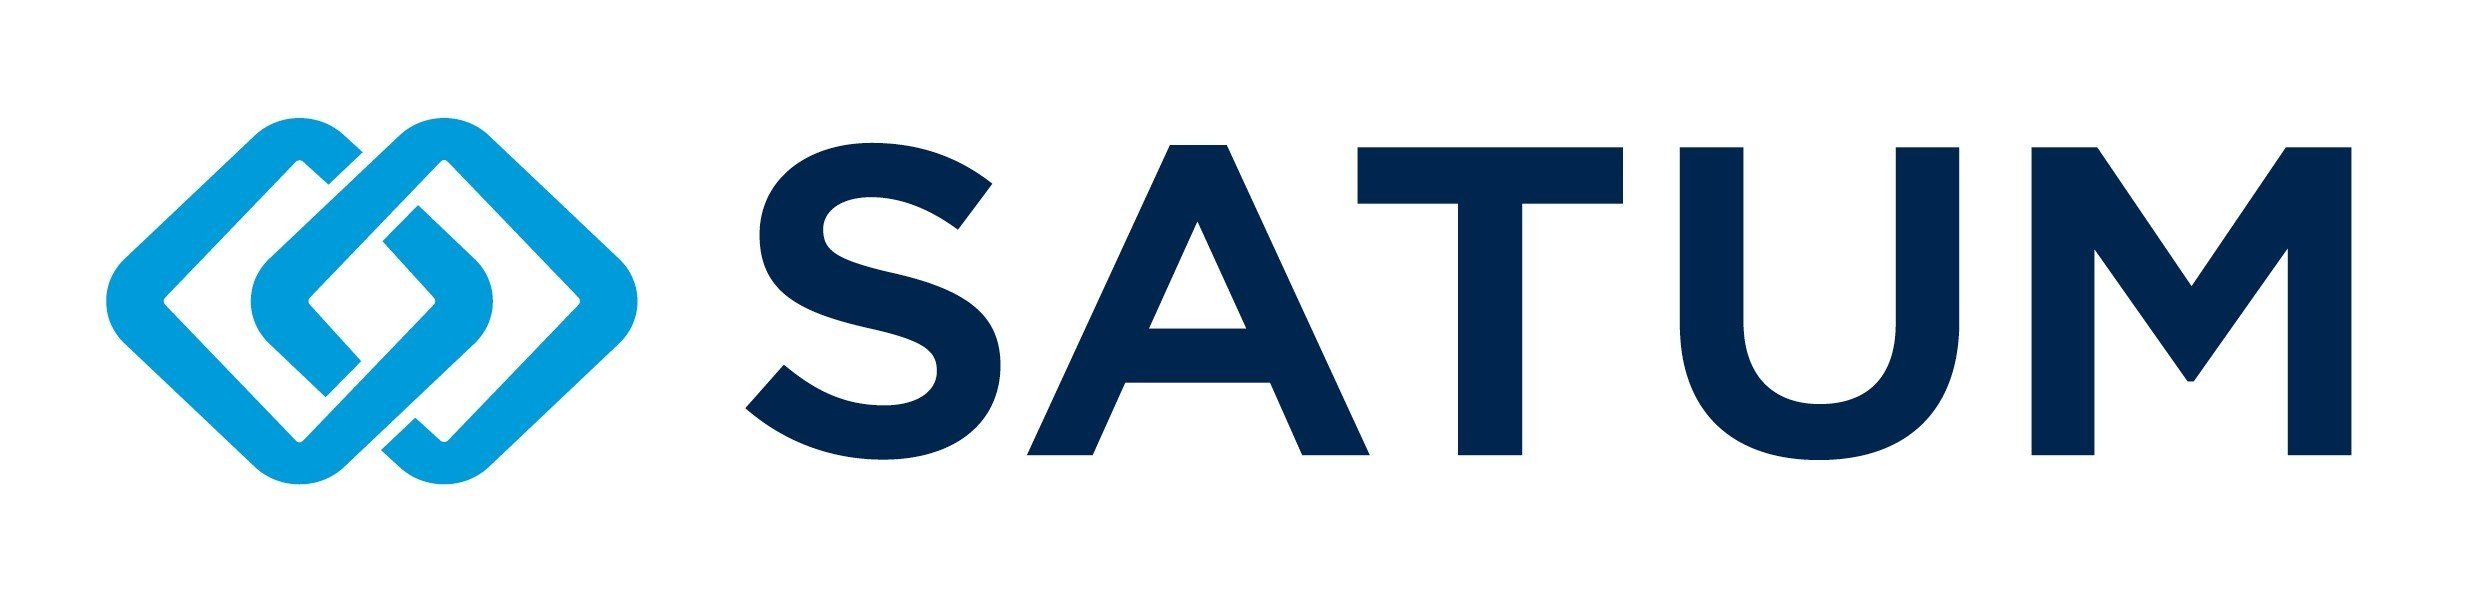 SATUM_logo.jpg